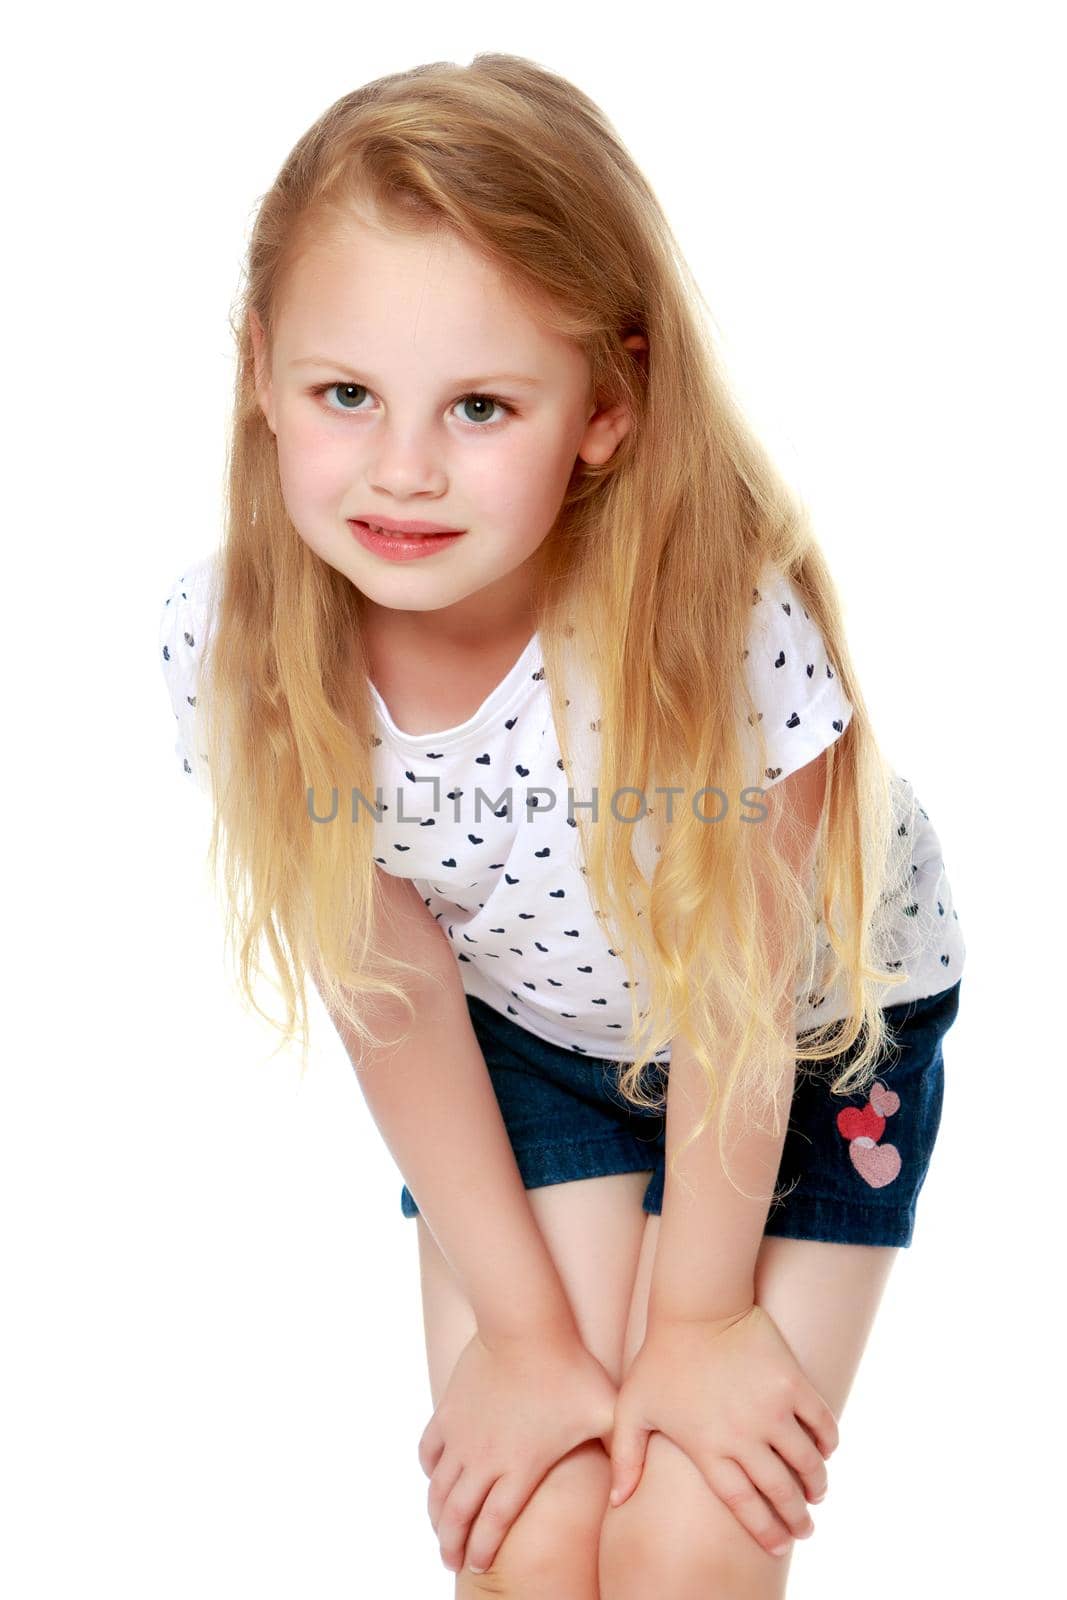 Portrait of a beautiful little girl by kolesnikov_studio